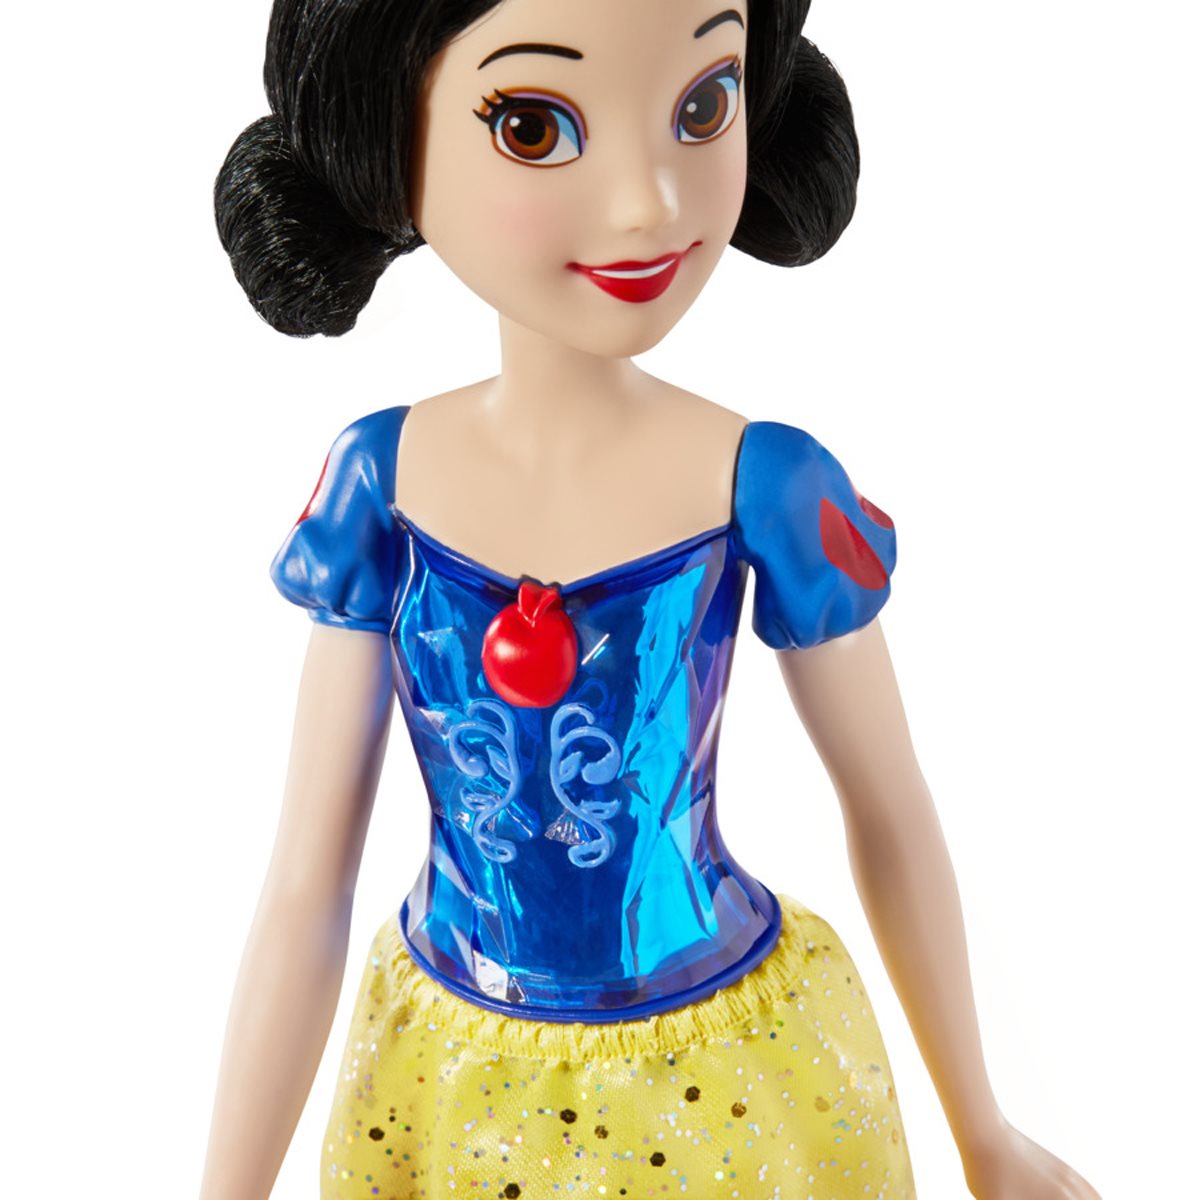 Disney Princess Doll, Royal Shimmer